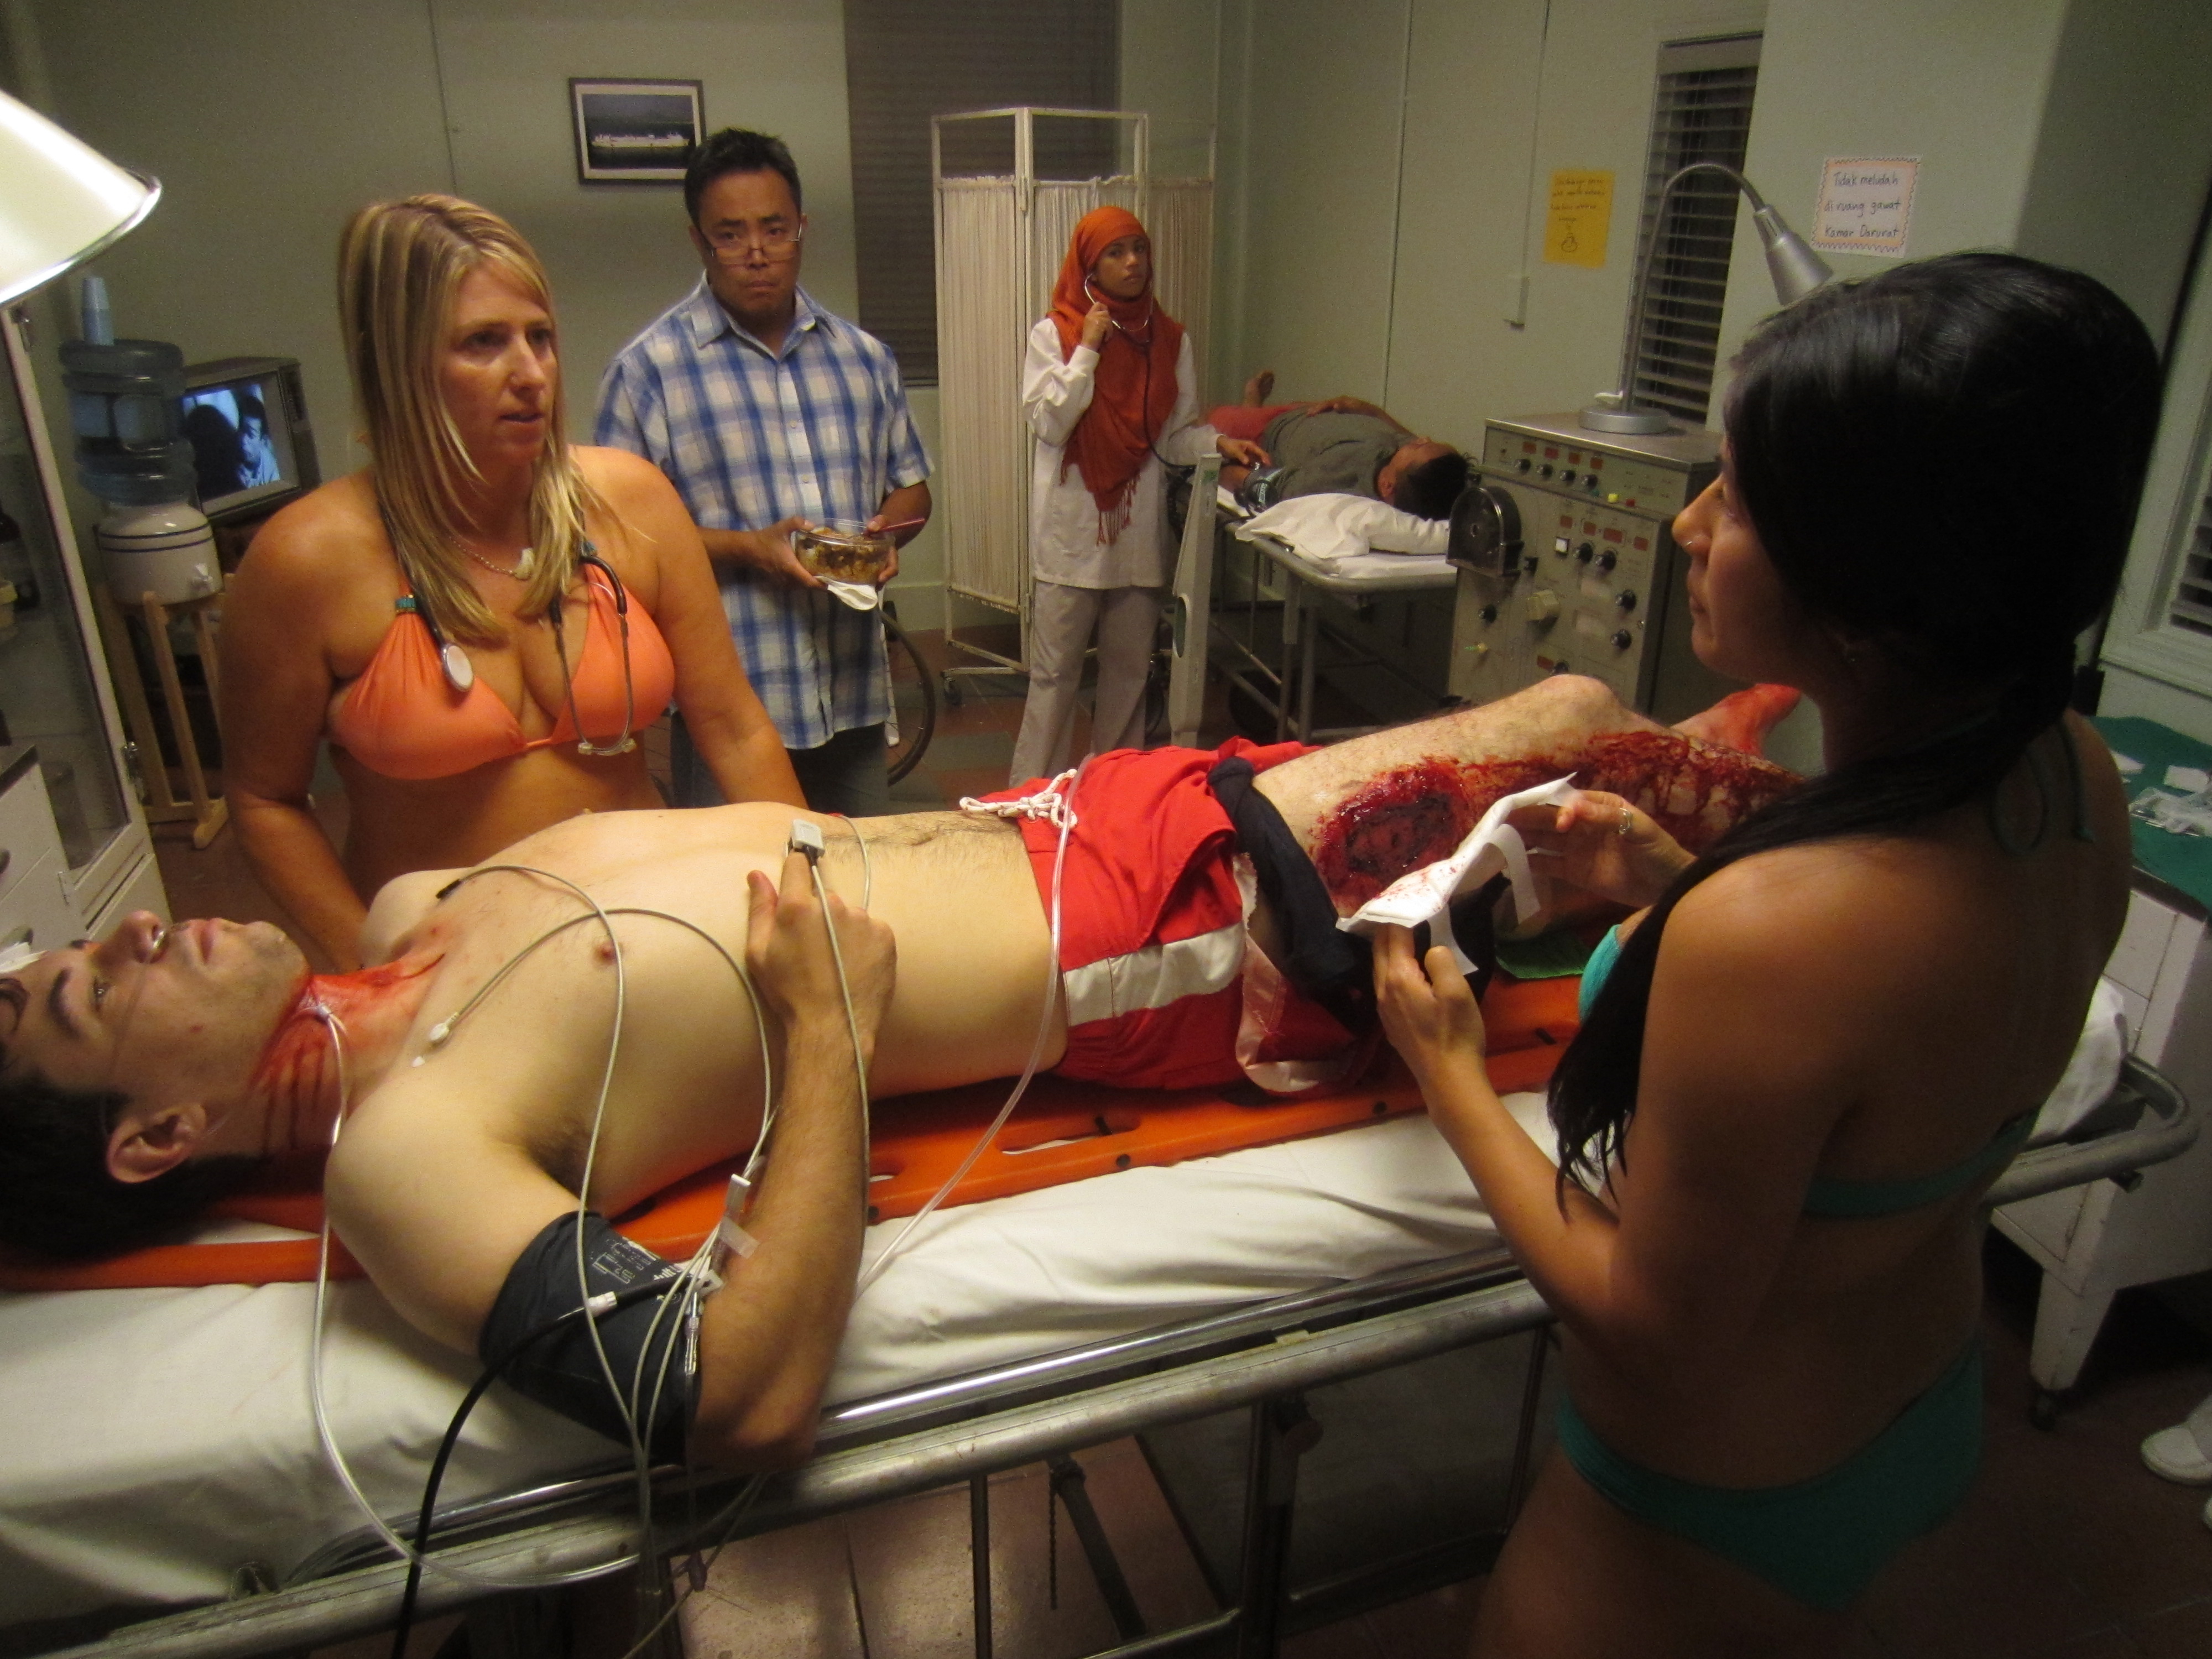 Untold Stories of the ER - Bikini Rescue 2014